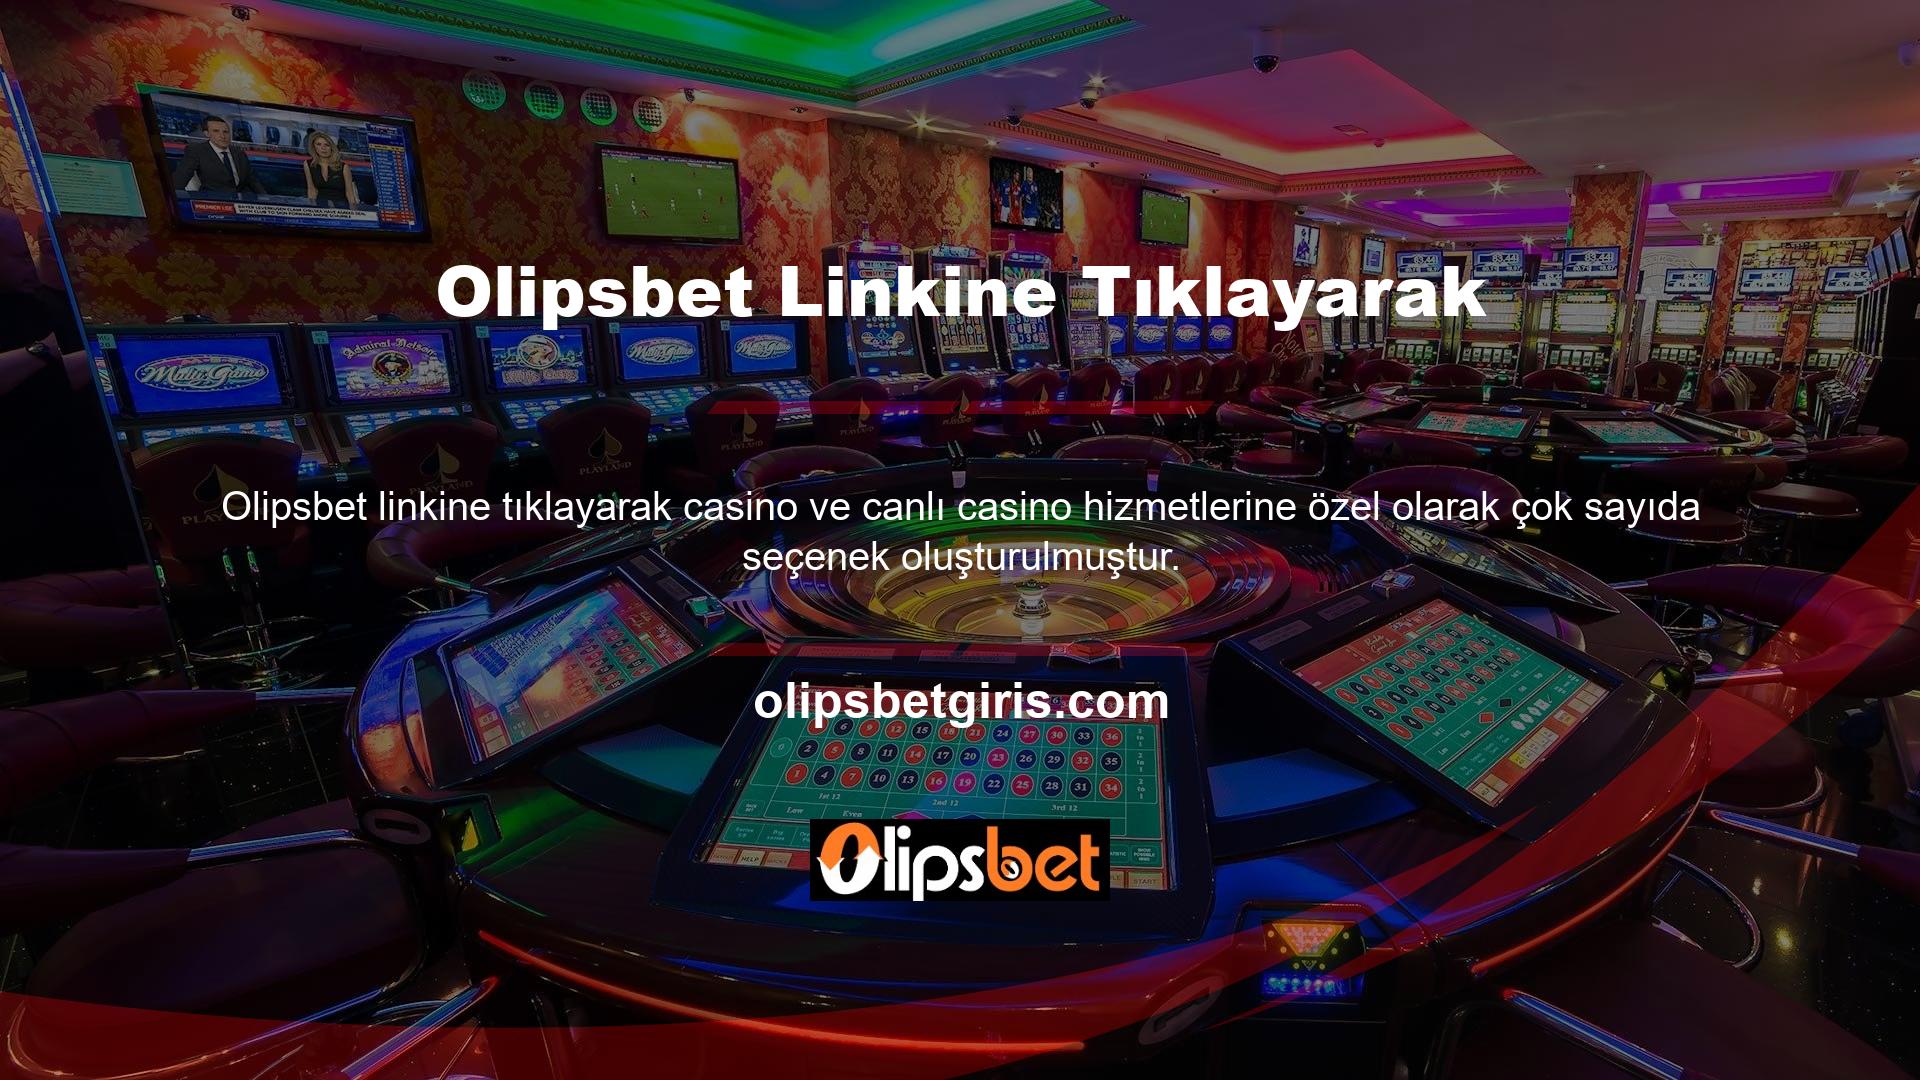 Olipsbet Casino Gaming Servisesin oyun uygulaması dilediğiniz zaman platforma giriş yapmanızı ve şansınızı test etmenizi sağlar